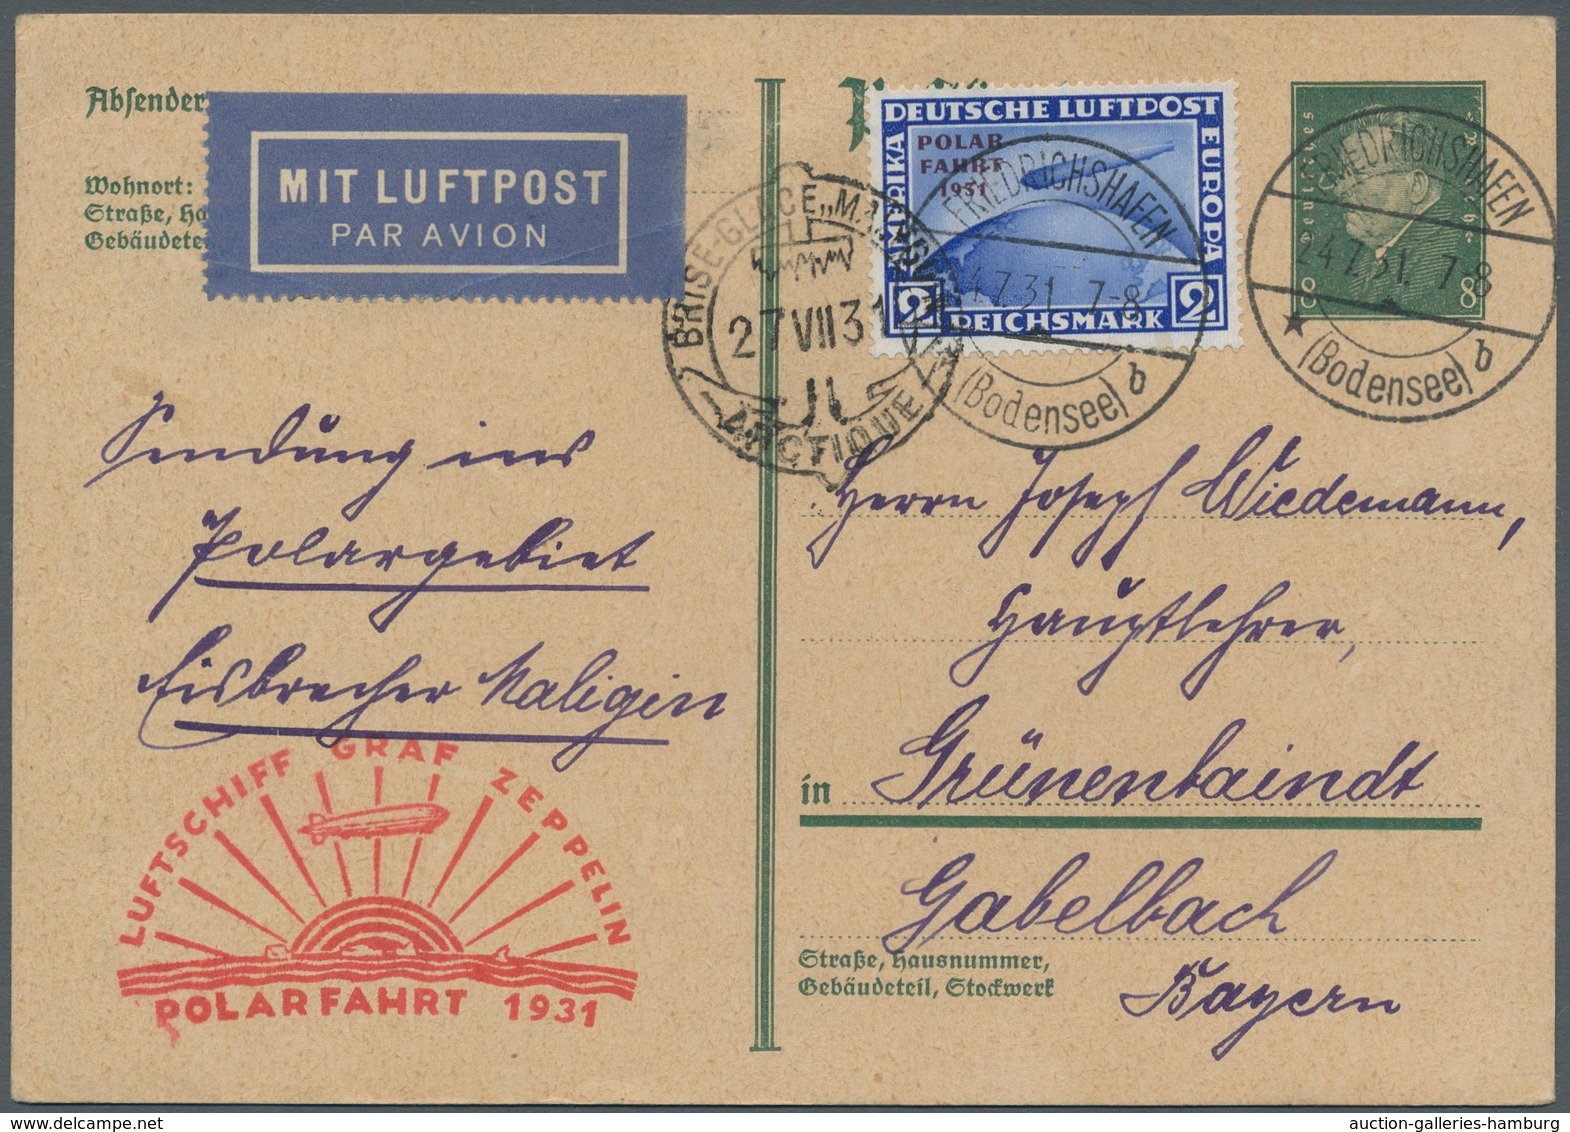 Zeppelinpost Deutschland: 1931 - Polarfahrt, Selten Für Zeppelinfahrten Verwendete 8 Pfg. Ganzsachen - Airmail & Zeppelin